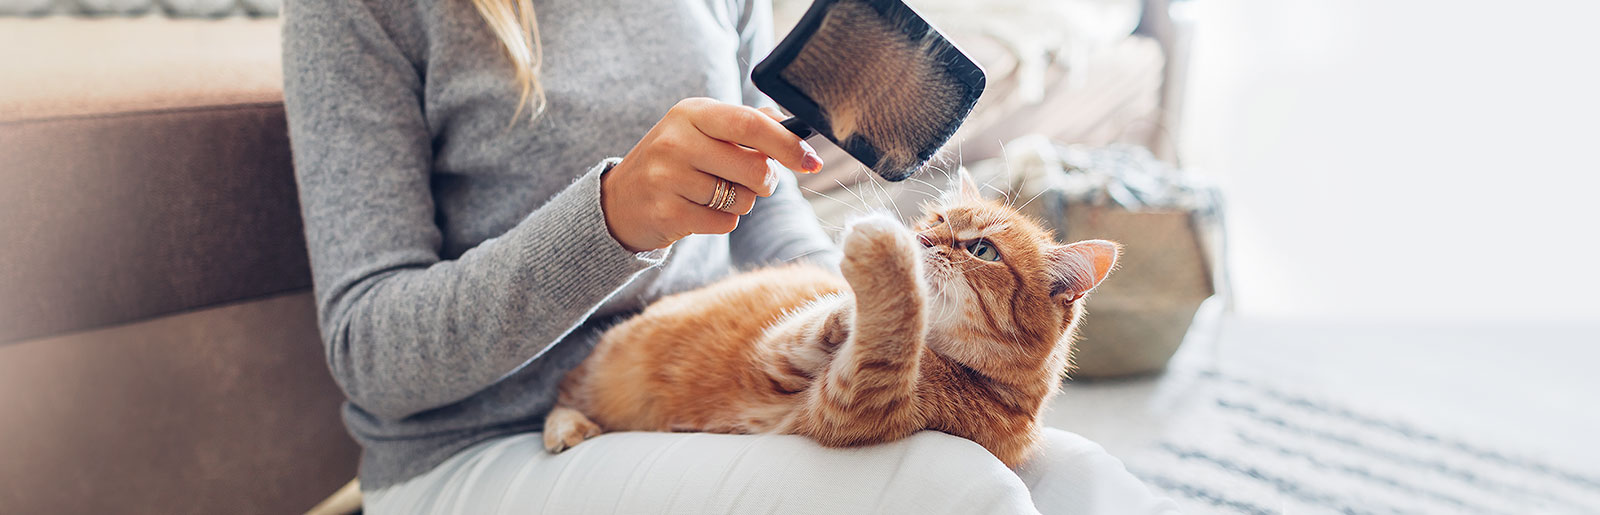 Vachtverzorging bij katten: Voor een glanzende en gezonde kattenvacht